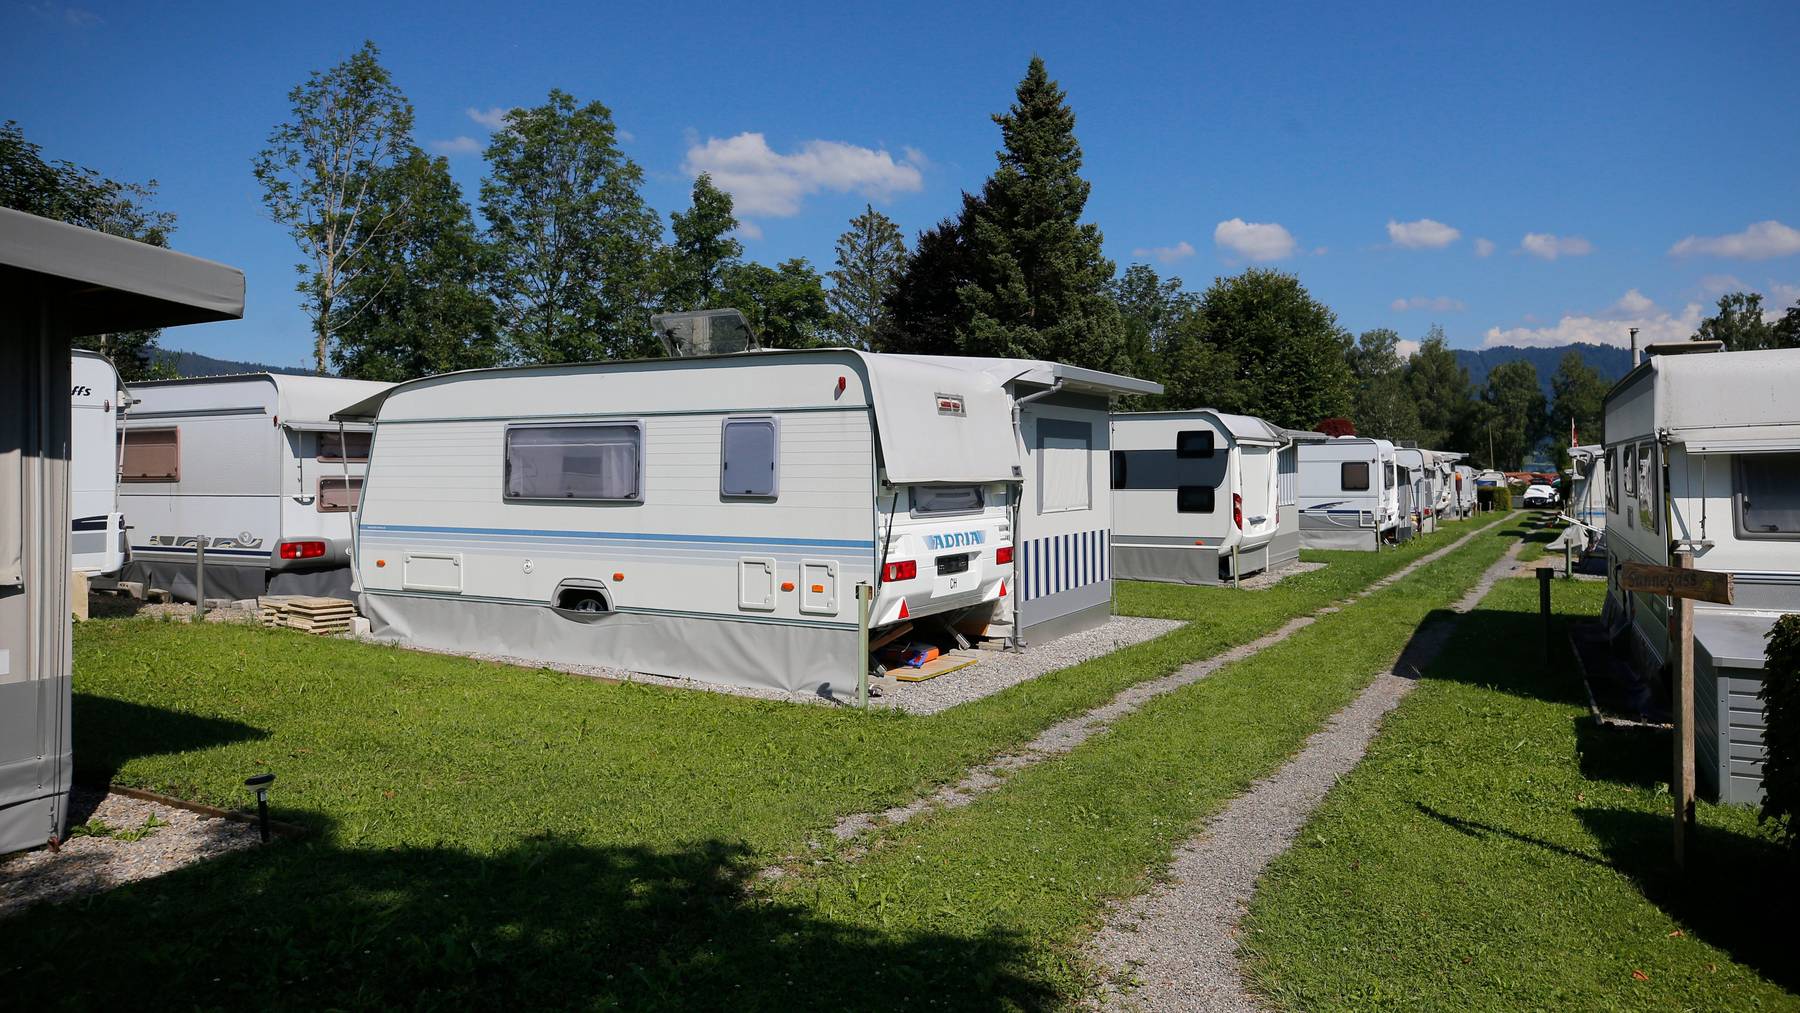 Campingplätze seien gleich zu behandeln wie Jugendherbergen oder Hotels, fordert der Verband Swisscamps.